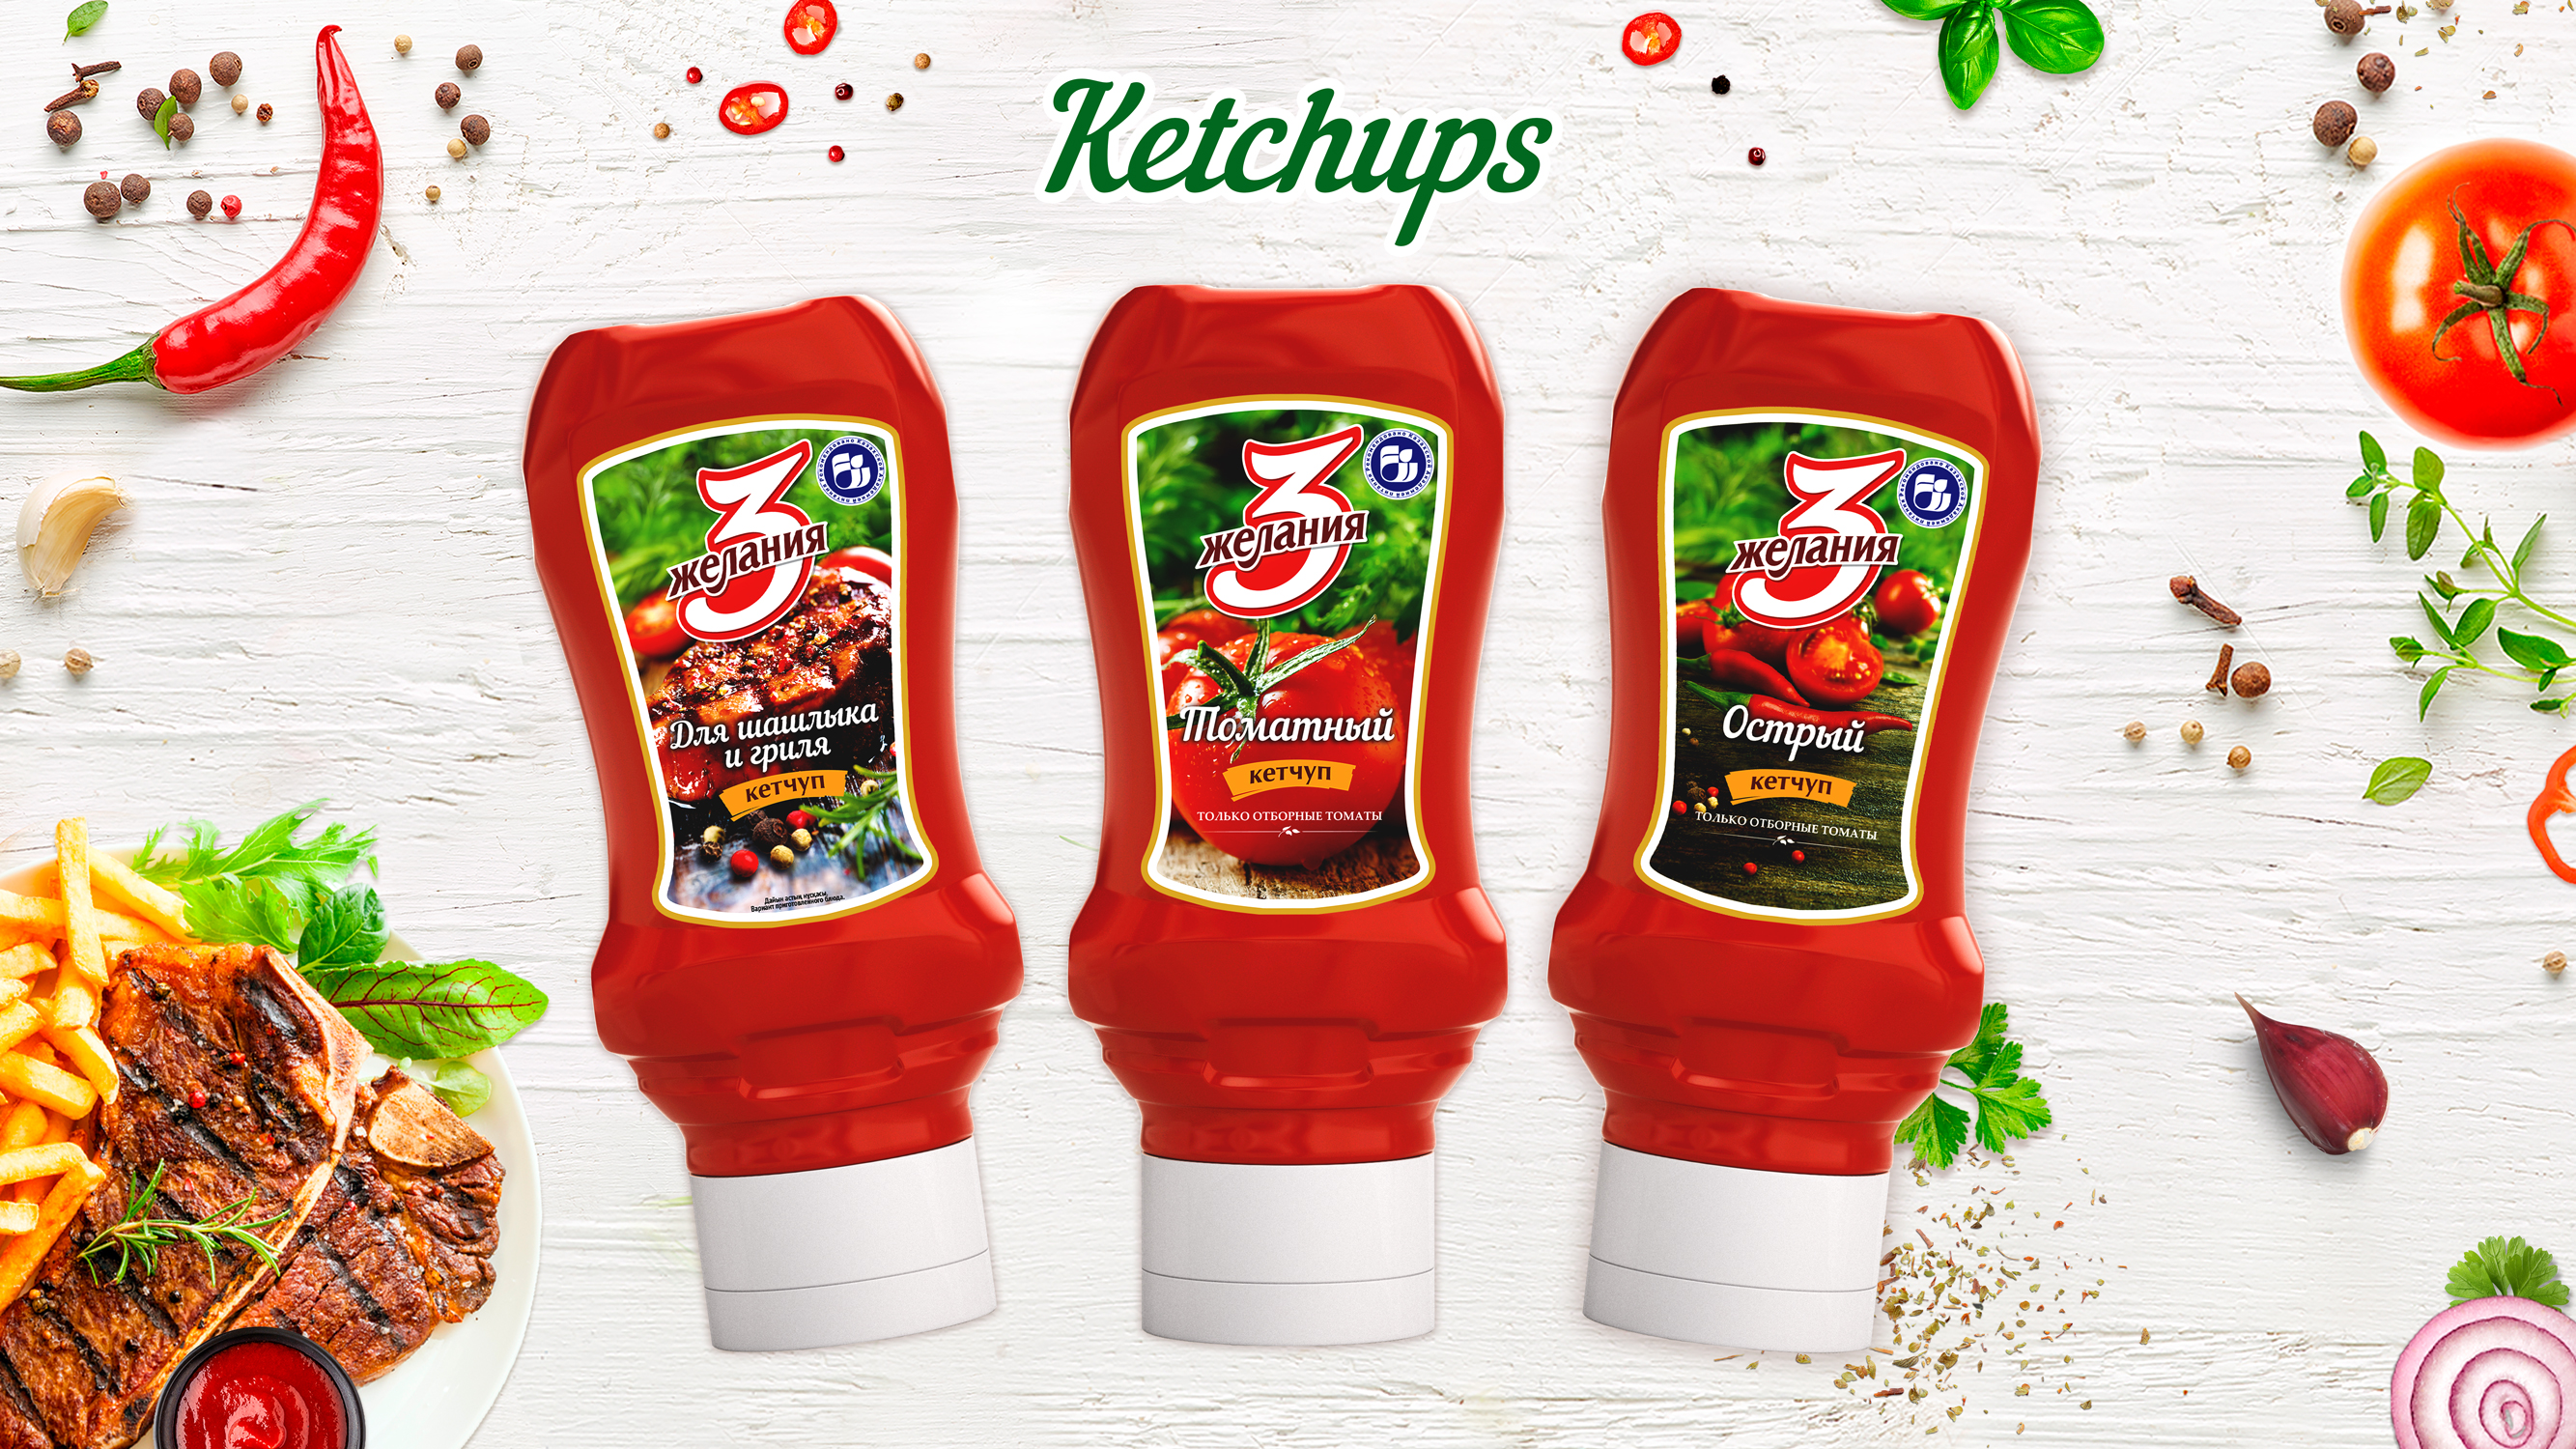 番茄酱 (Ketchup)